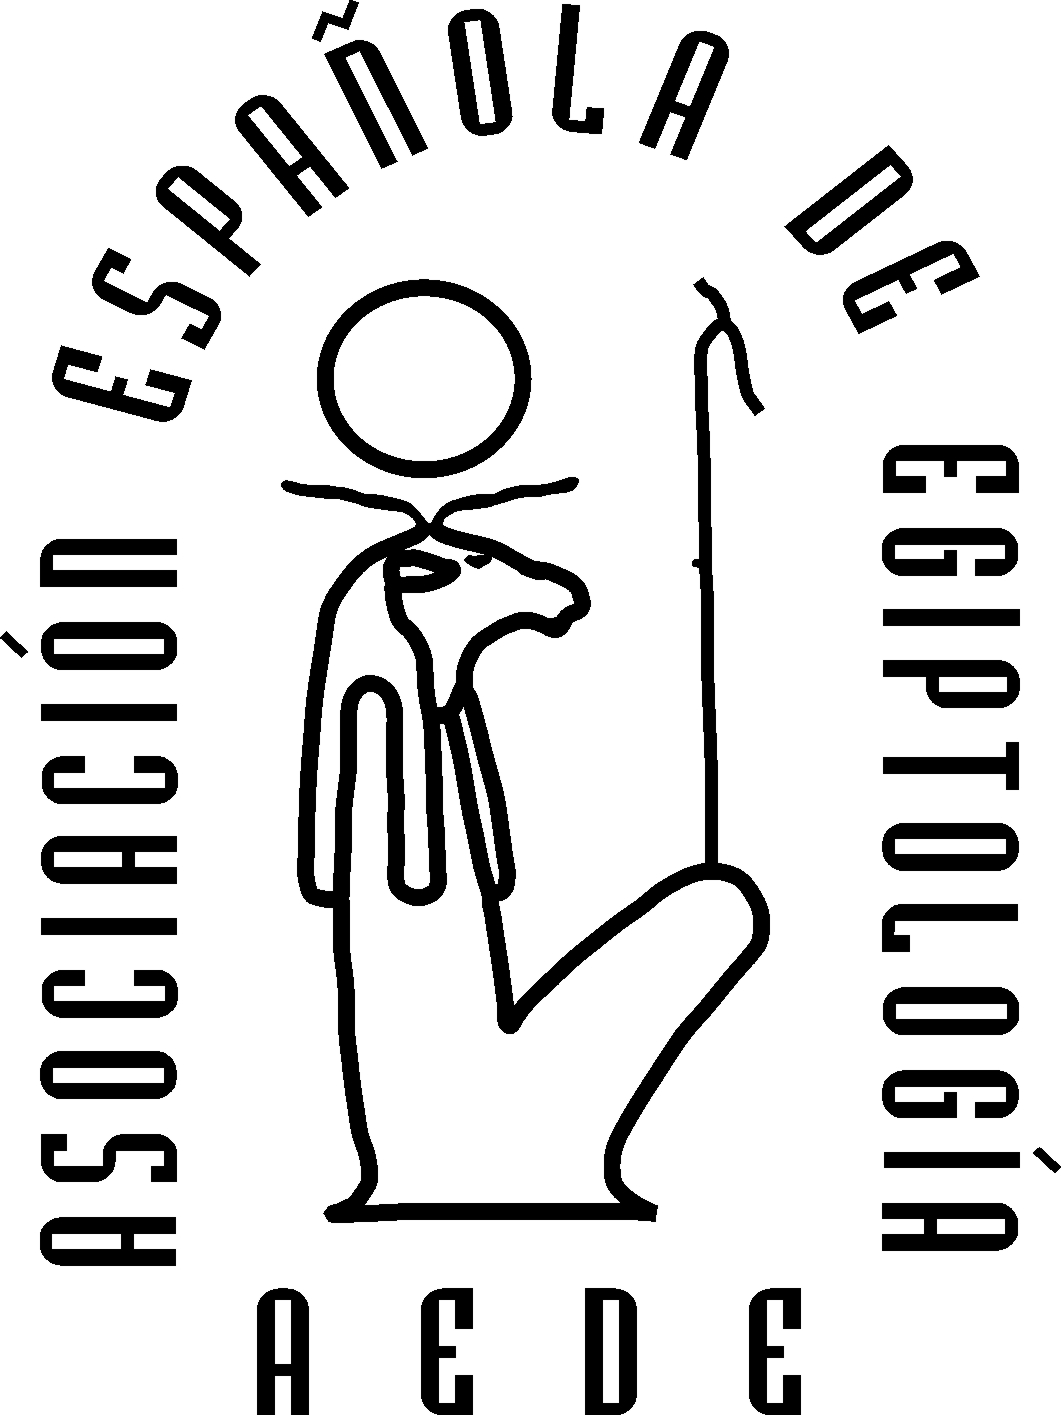 asociacion-espanola-de-egiptologia